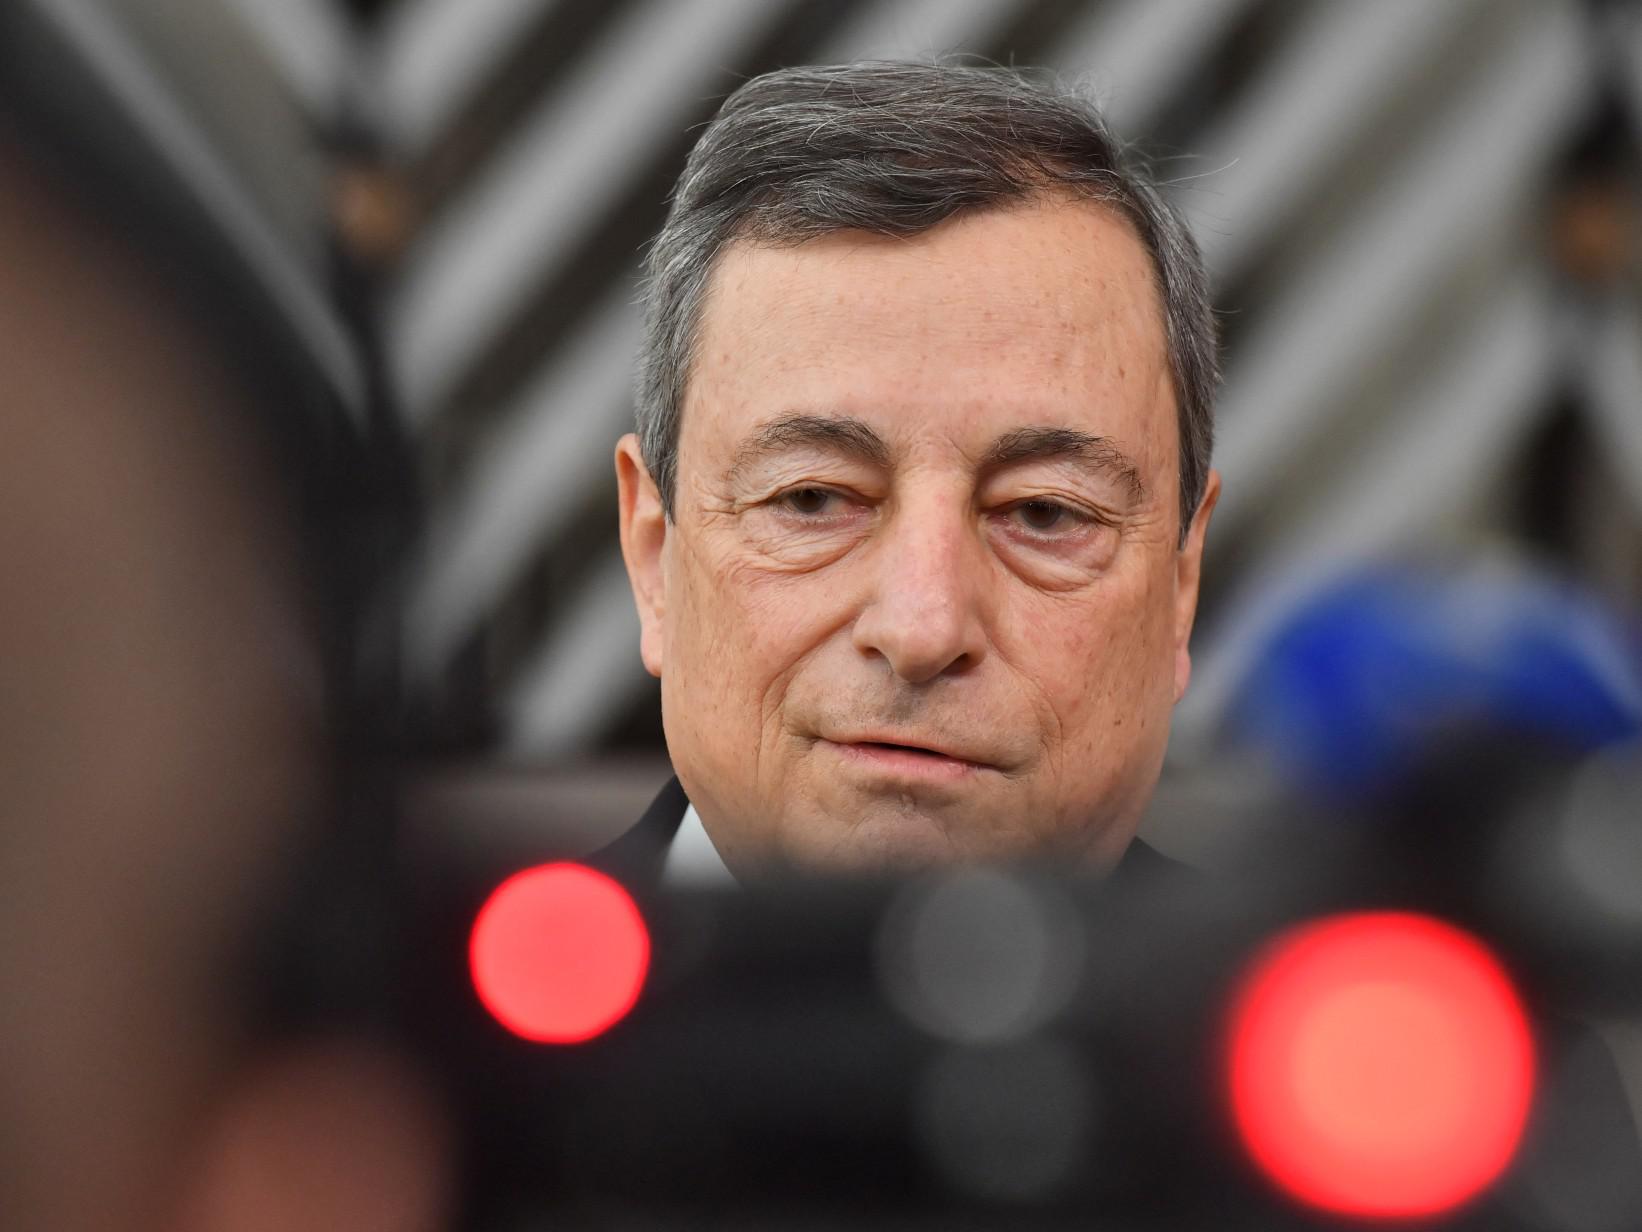 Gas russo, Draghi: "Dipendenza rischia di diventare sottomissione"